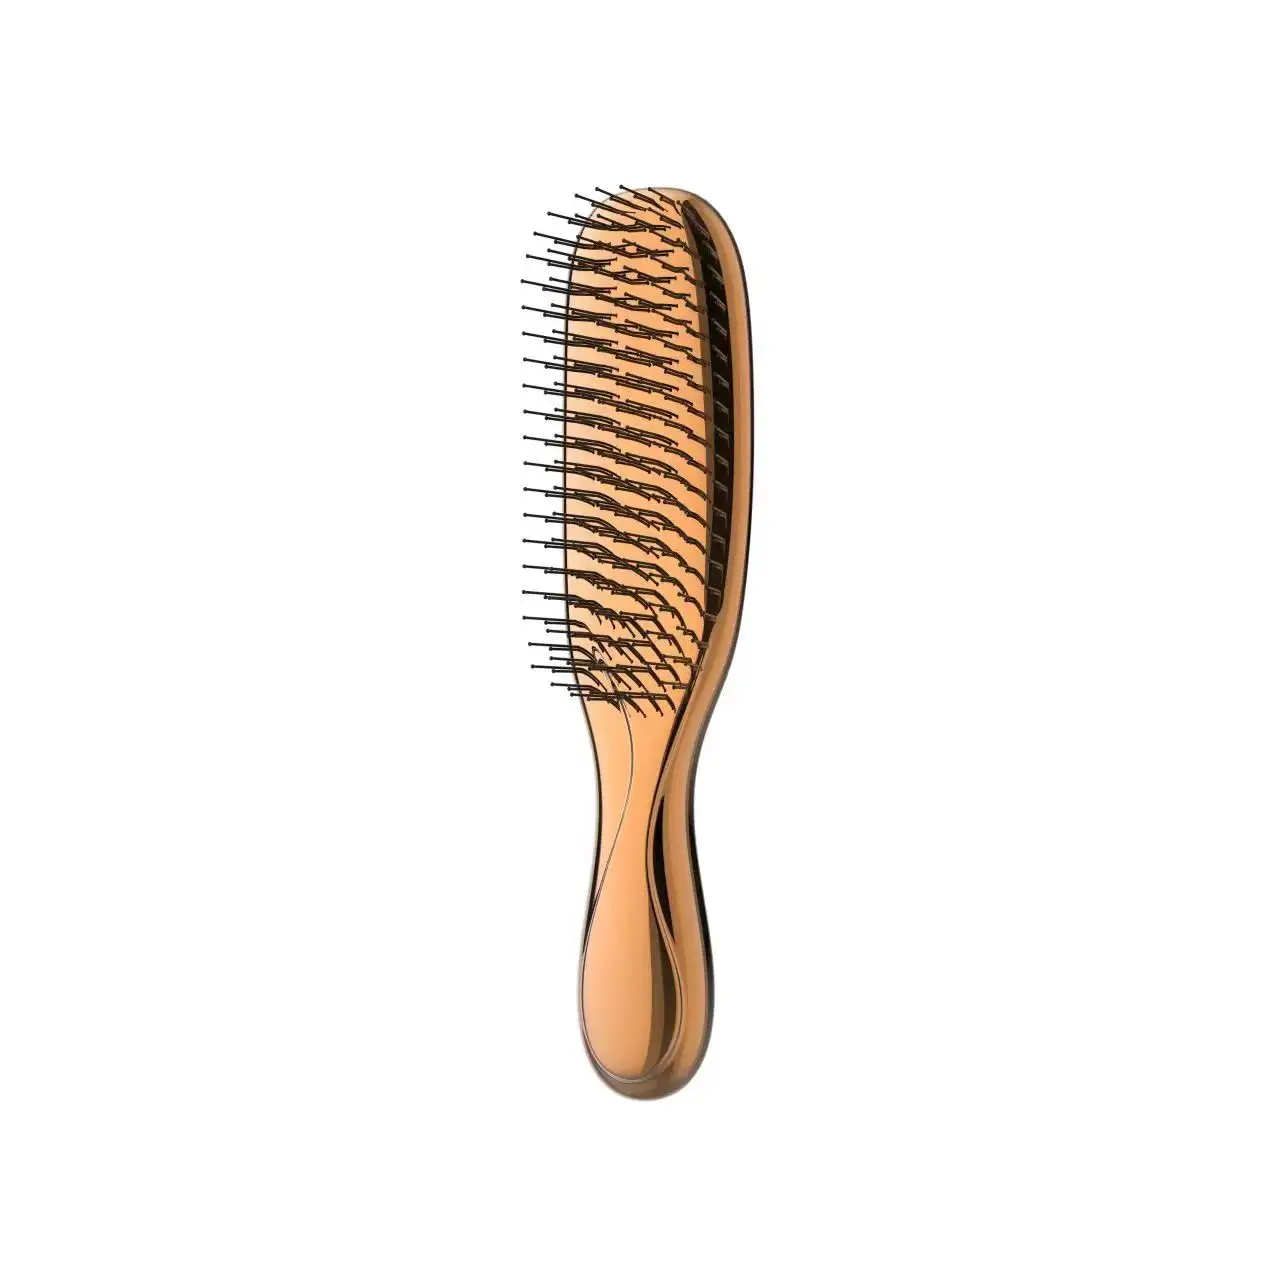 Neuzugang Großhandel Eigenmarke Neues Design Haarbürste Nylonbürste Massage Kopfhaut Haarbürste